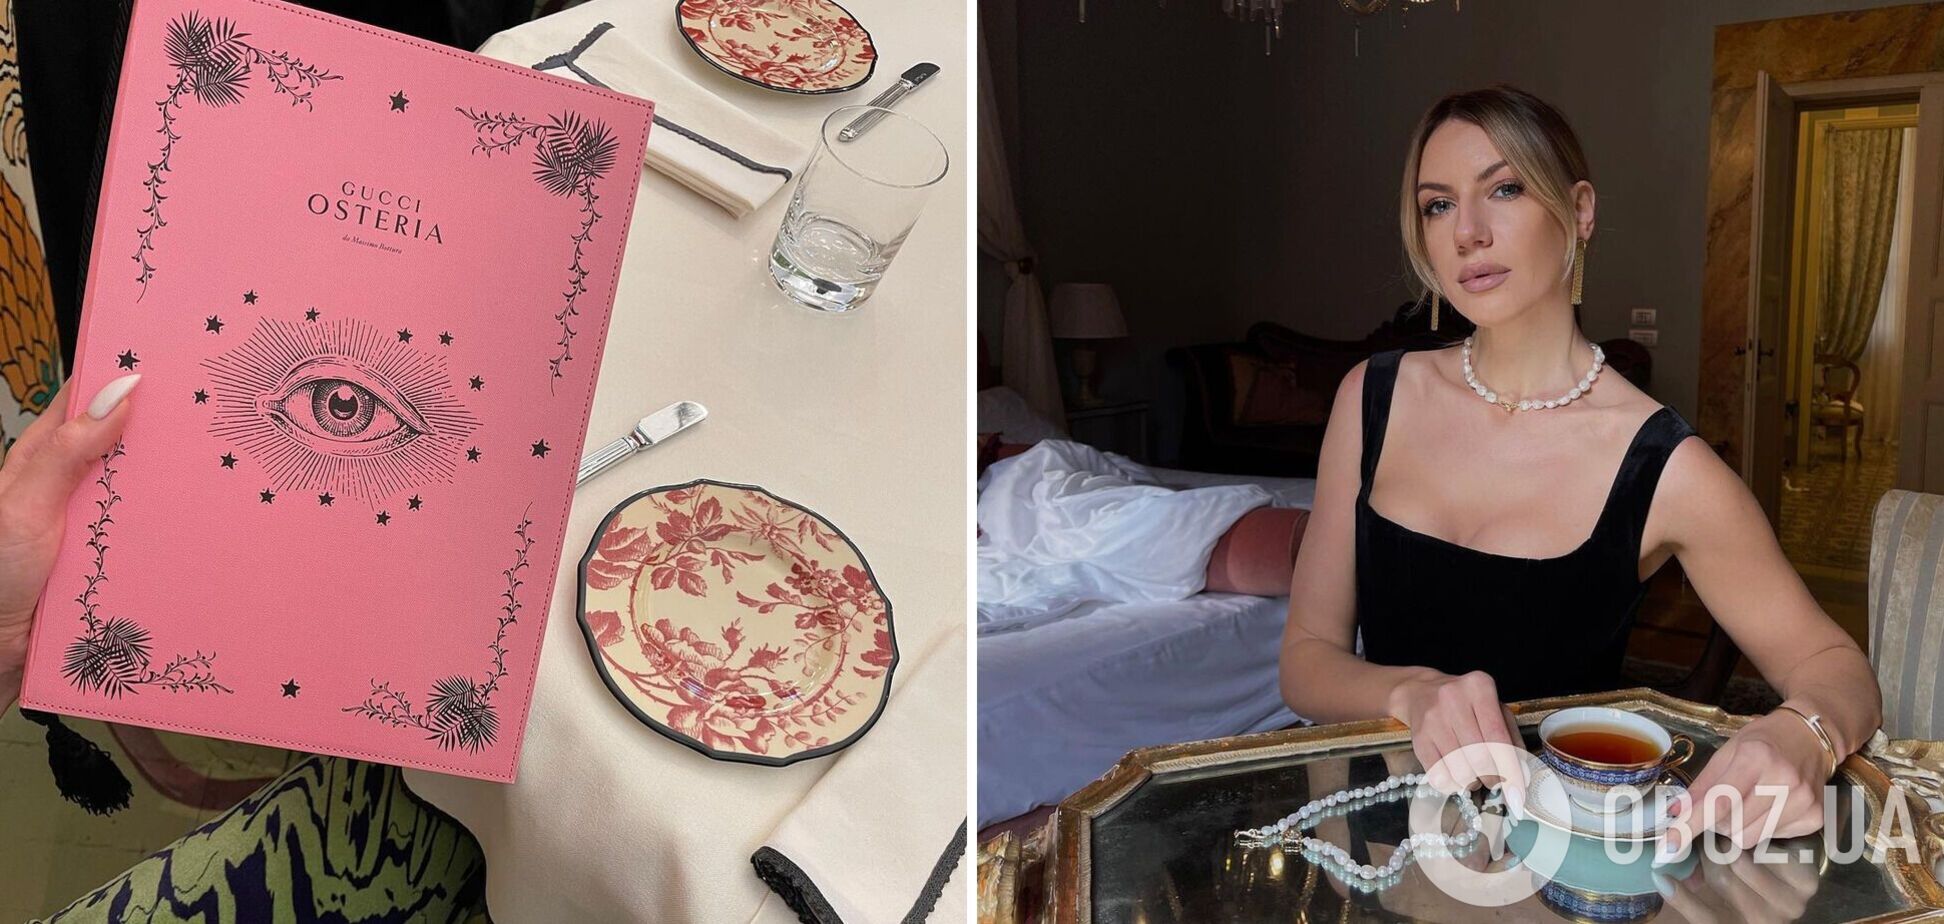 Как выглядит лук из супа за 1500 грн: Леся Никитюк показала визит в ресторан Gucci